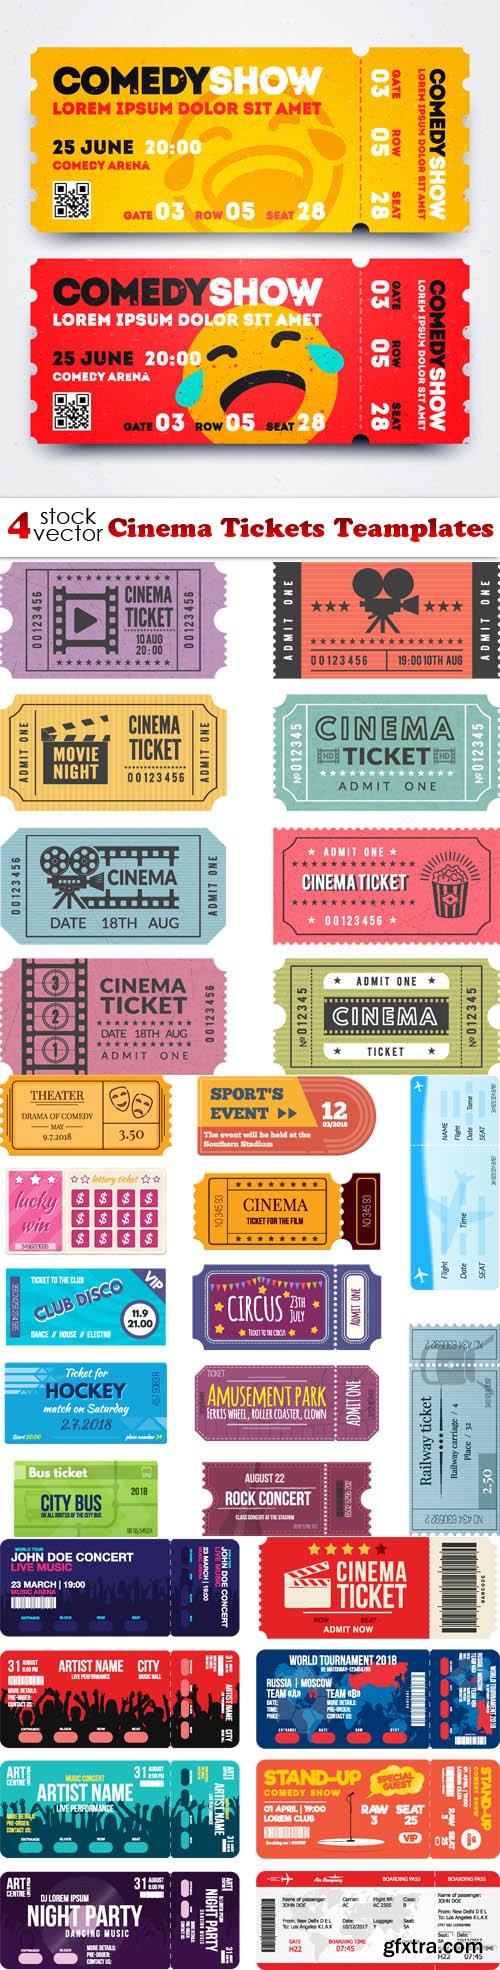 Vectors - Cinema Tickets Teamplates